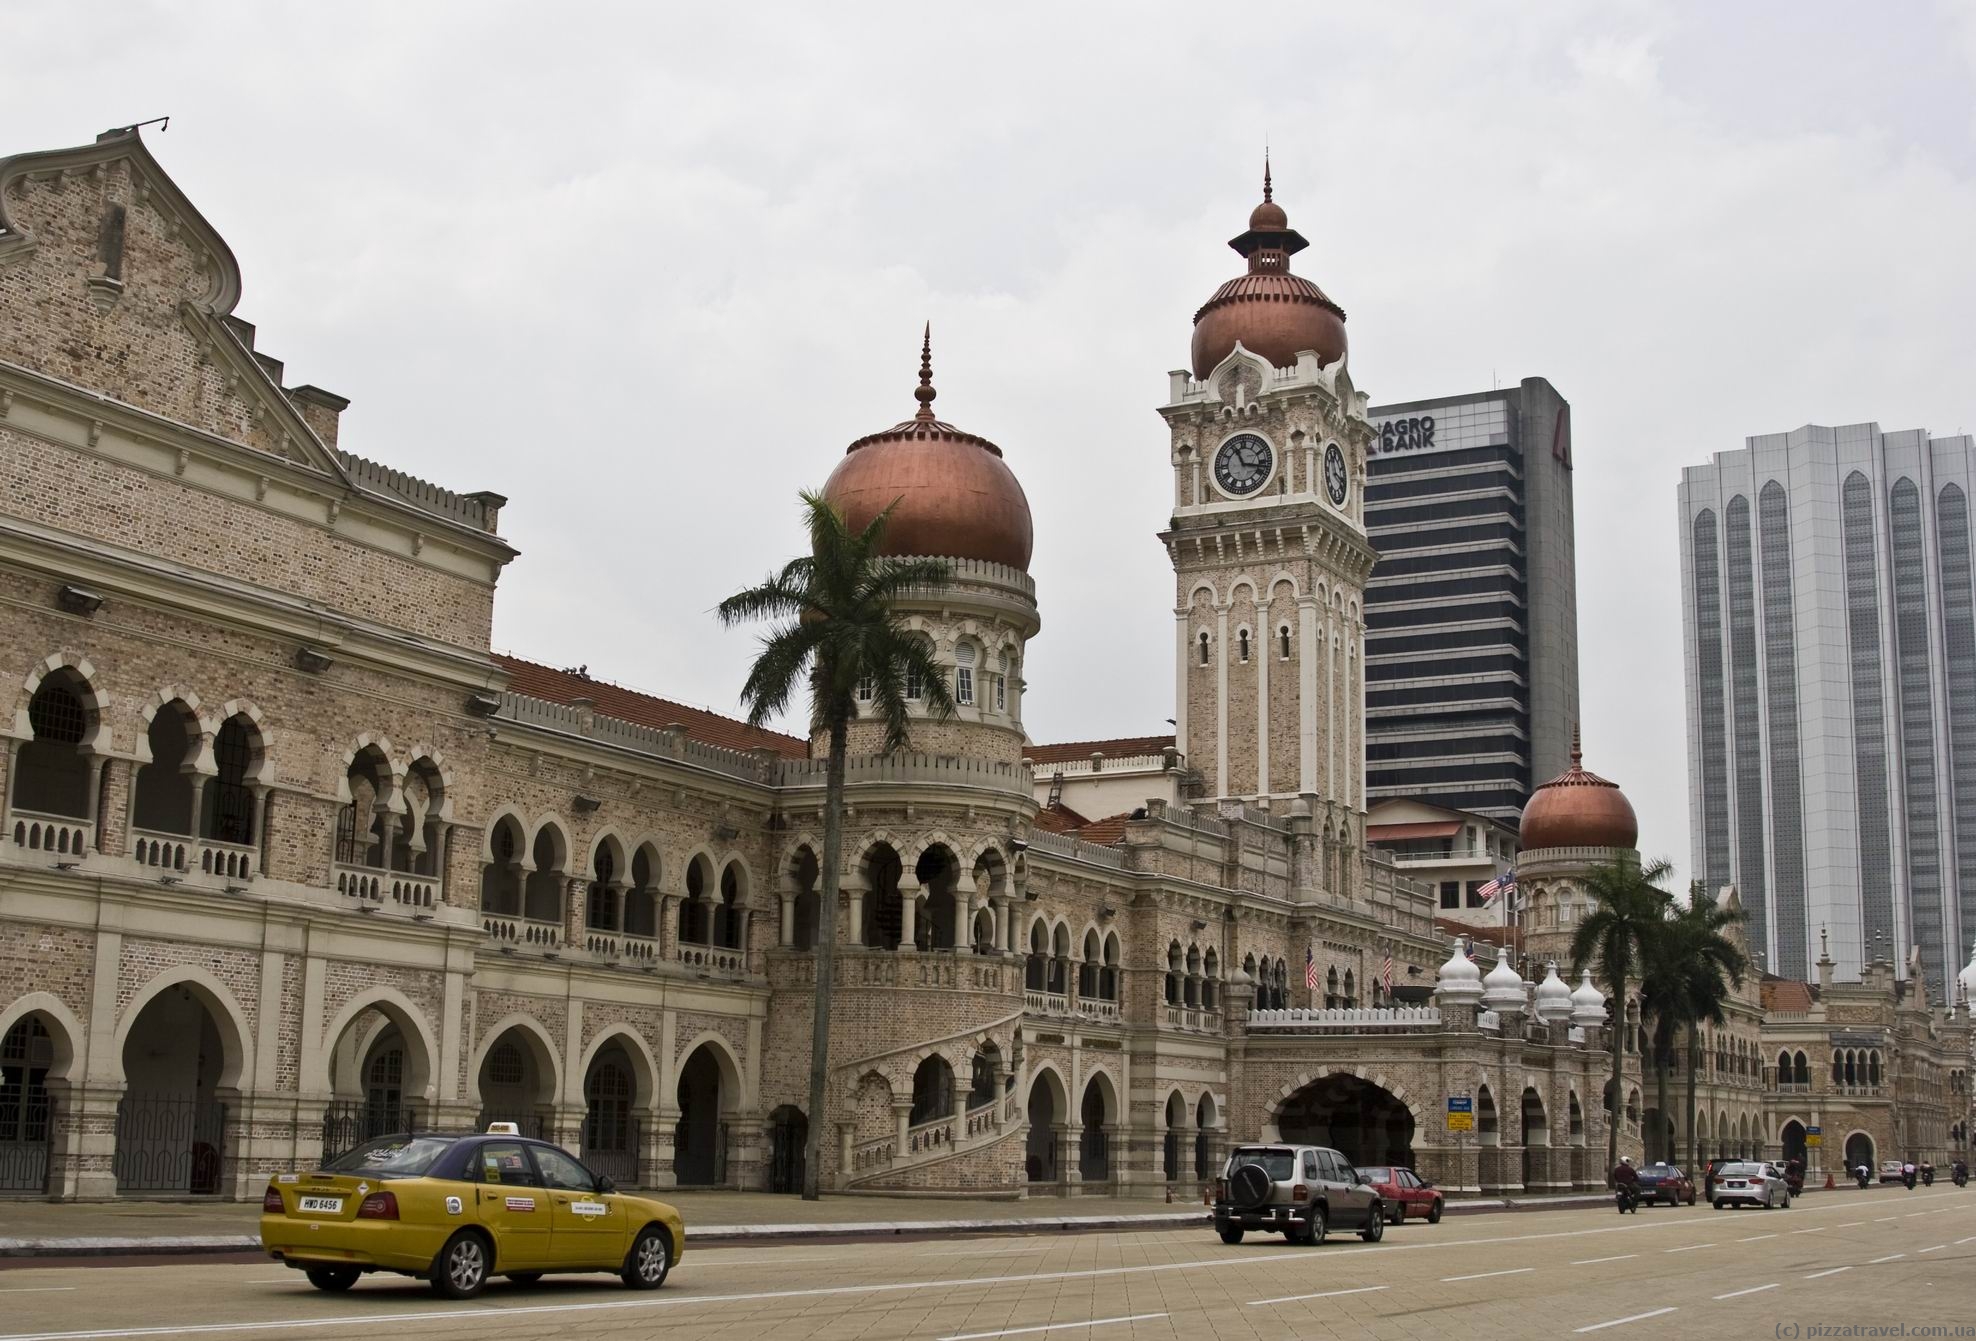 Kuala Lumpur - Malaysia - Blog about interesting places